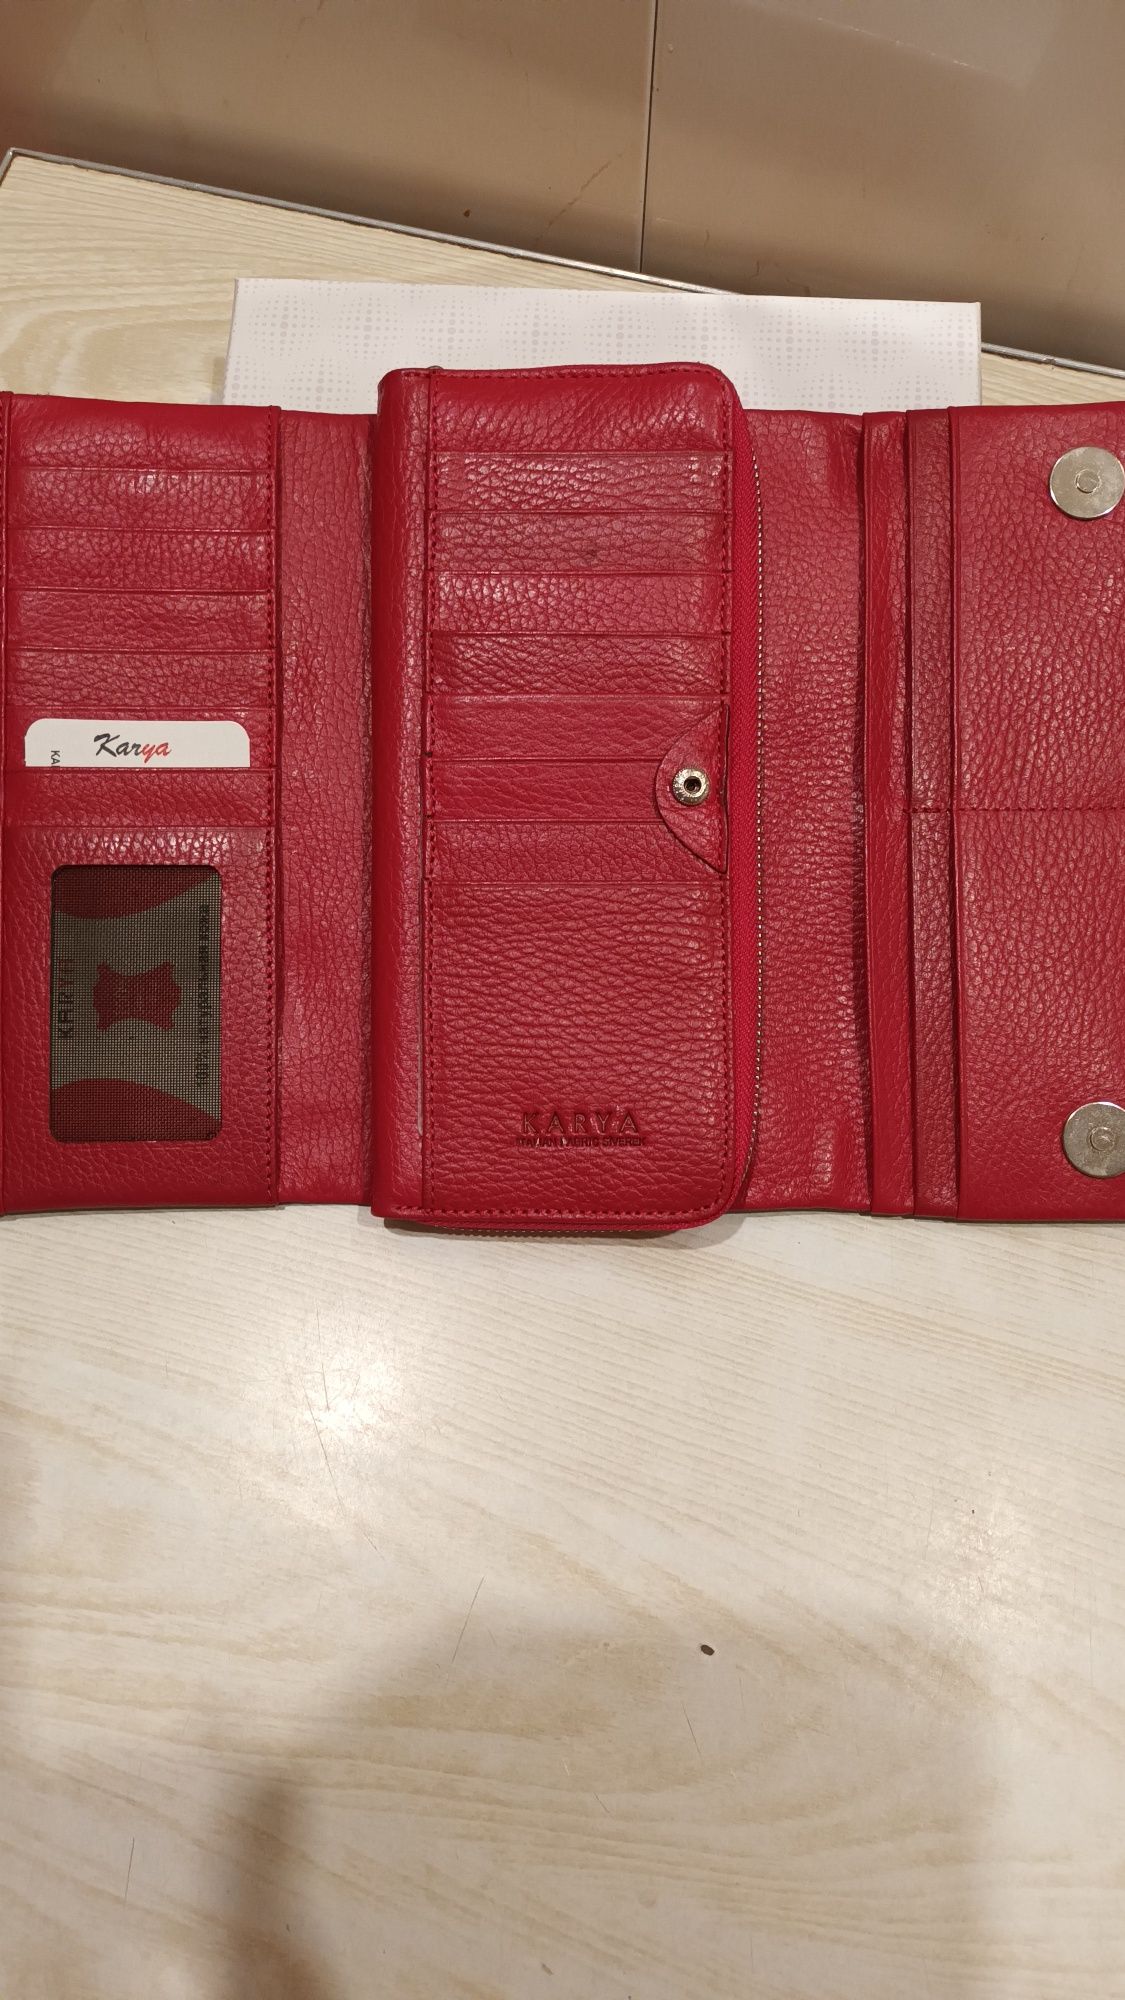 Кожаный кошелёк KARYA по доступной цене!